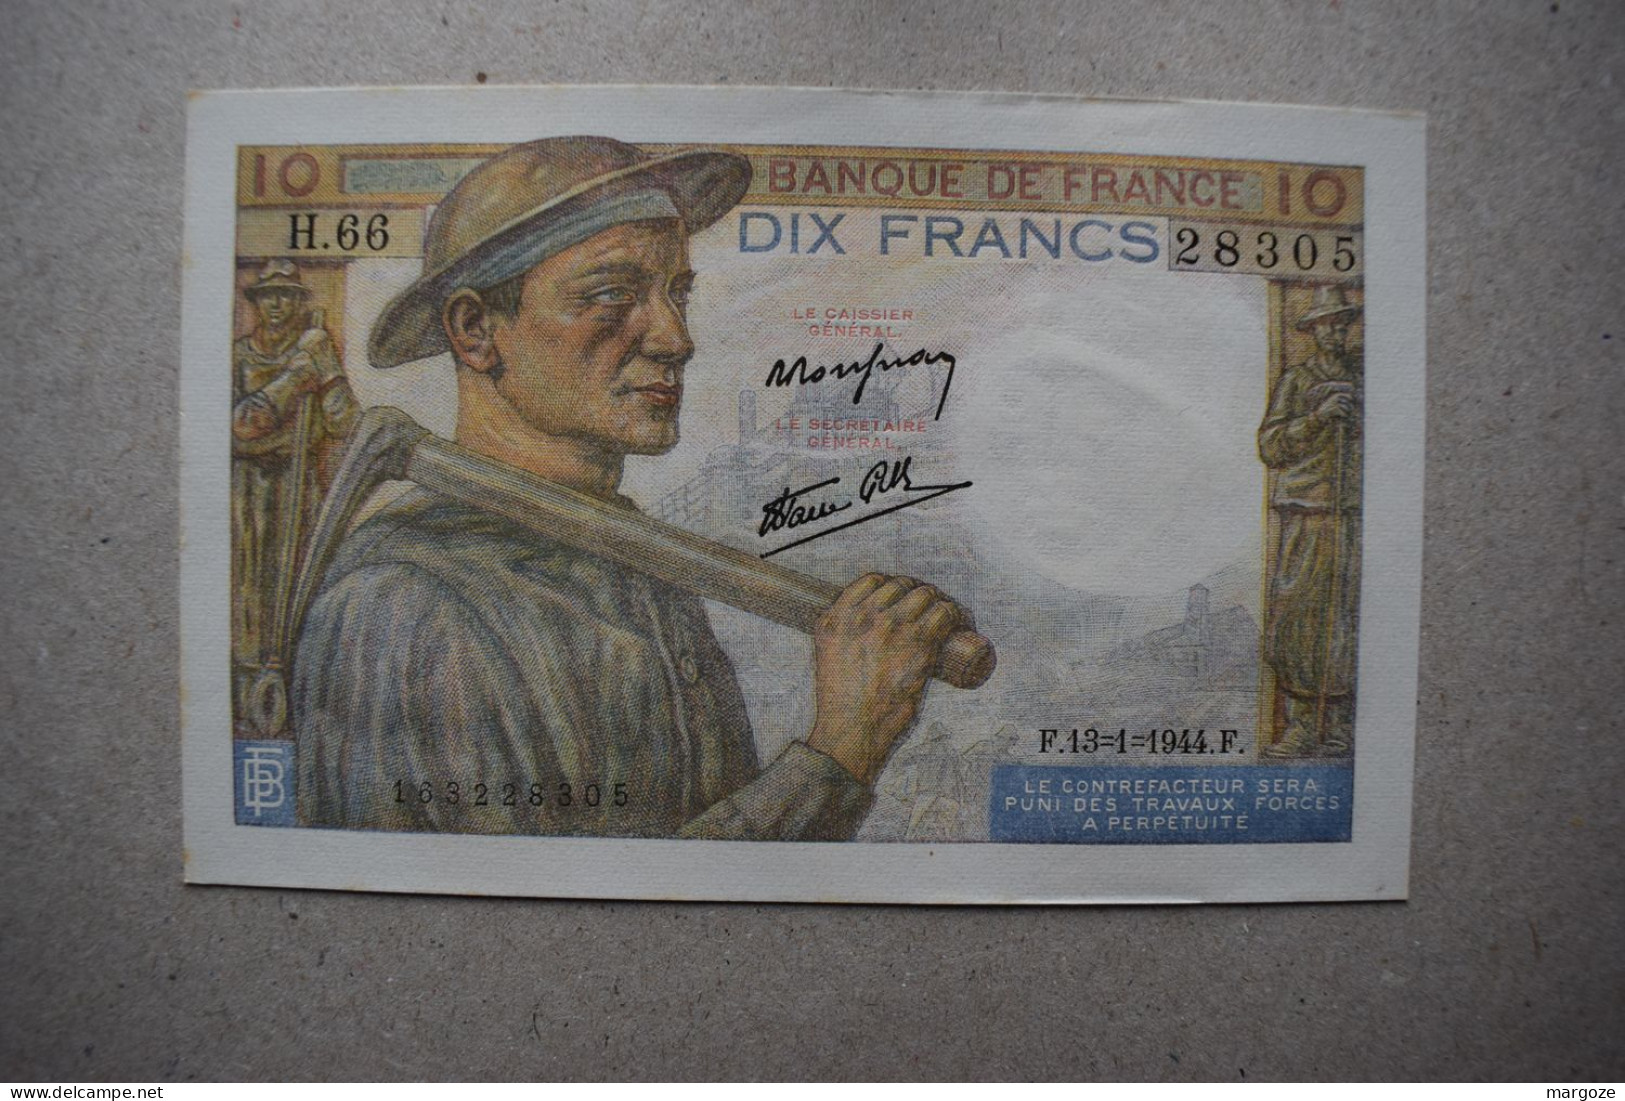 Lot de 5 billets France de 10 francs 1944 P99e aUNC UNC